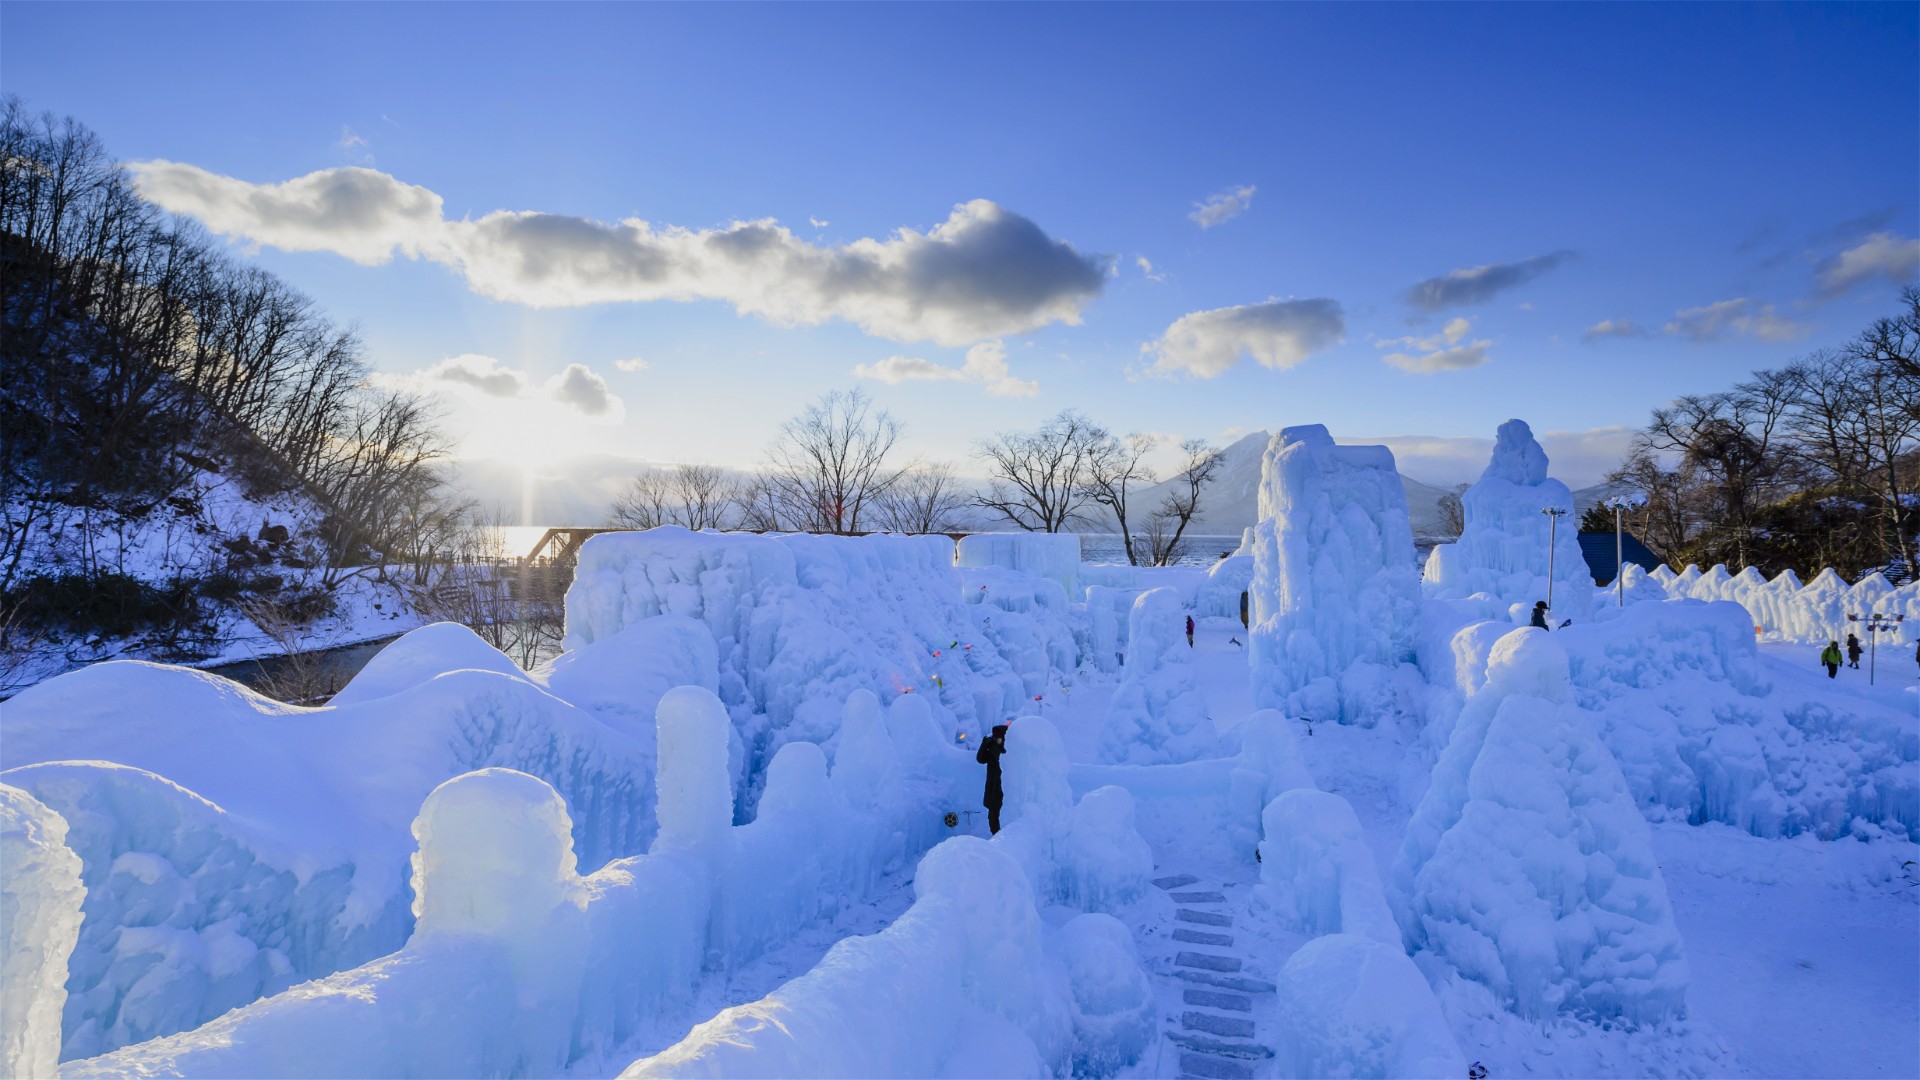 千歳 支笏湖 氷濤まつり 支笏湖の湖水をスプリンクラーで吹き付け凍らせた 大小様々な氷のオブジェが立ち並ぶ 北海道を代表する冬の祭典